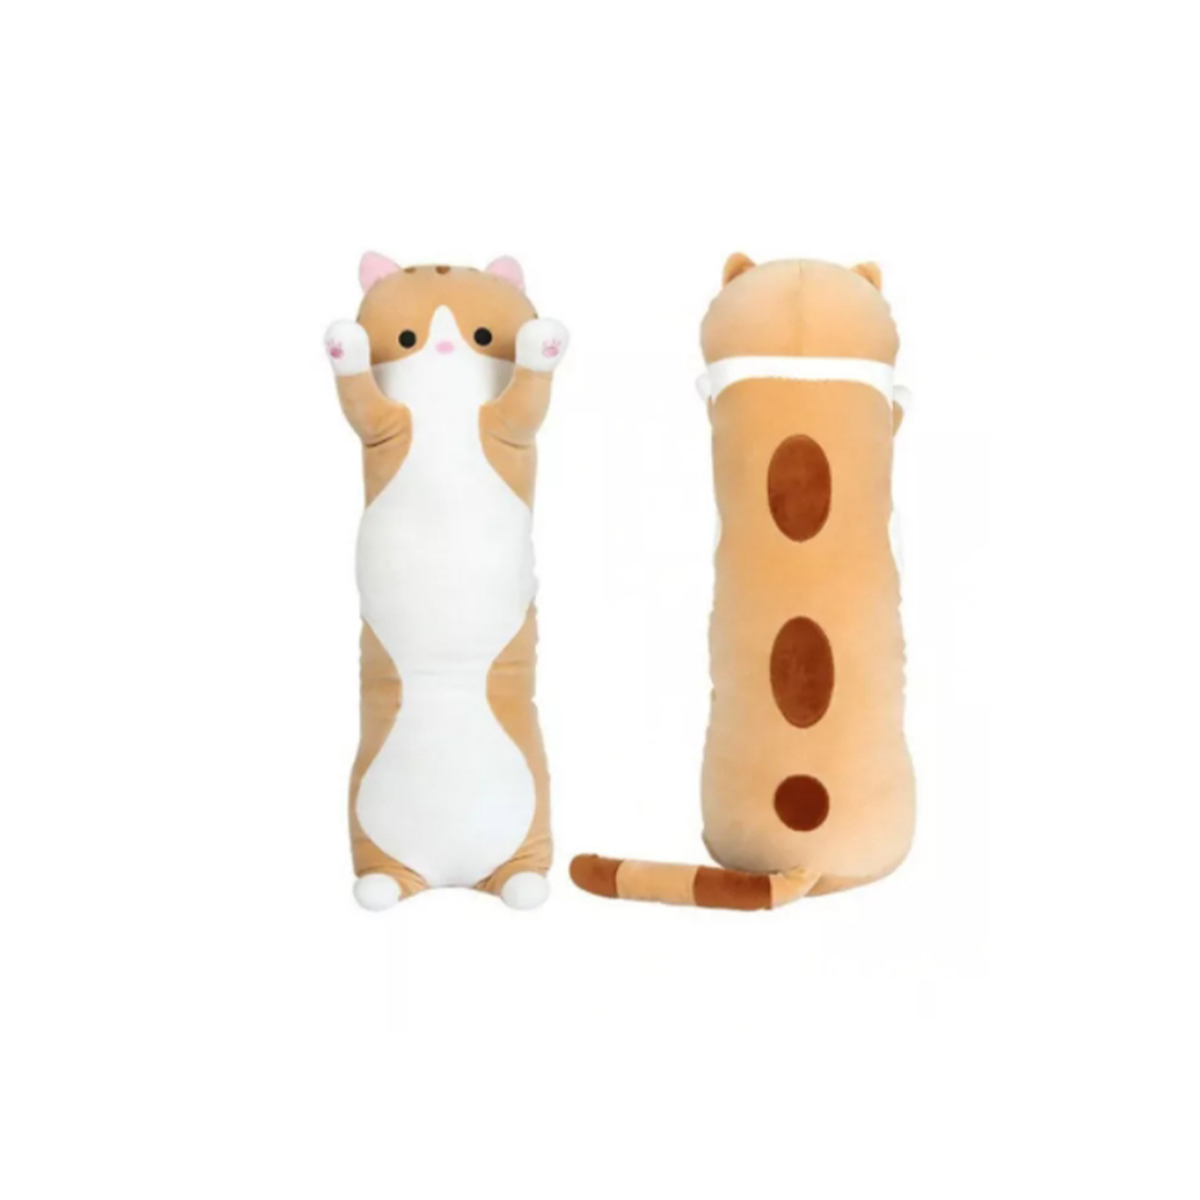 Мягкая игрушка-антистресс Кошка-батон, длинный кот рыжий 70 см